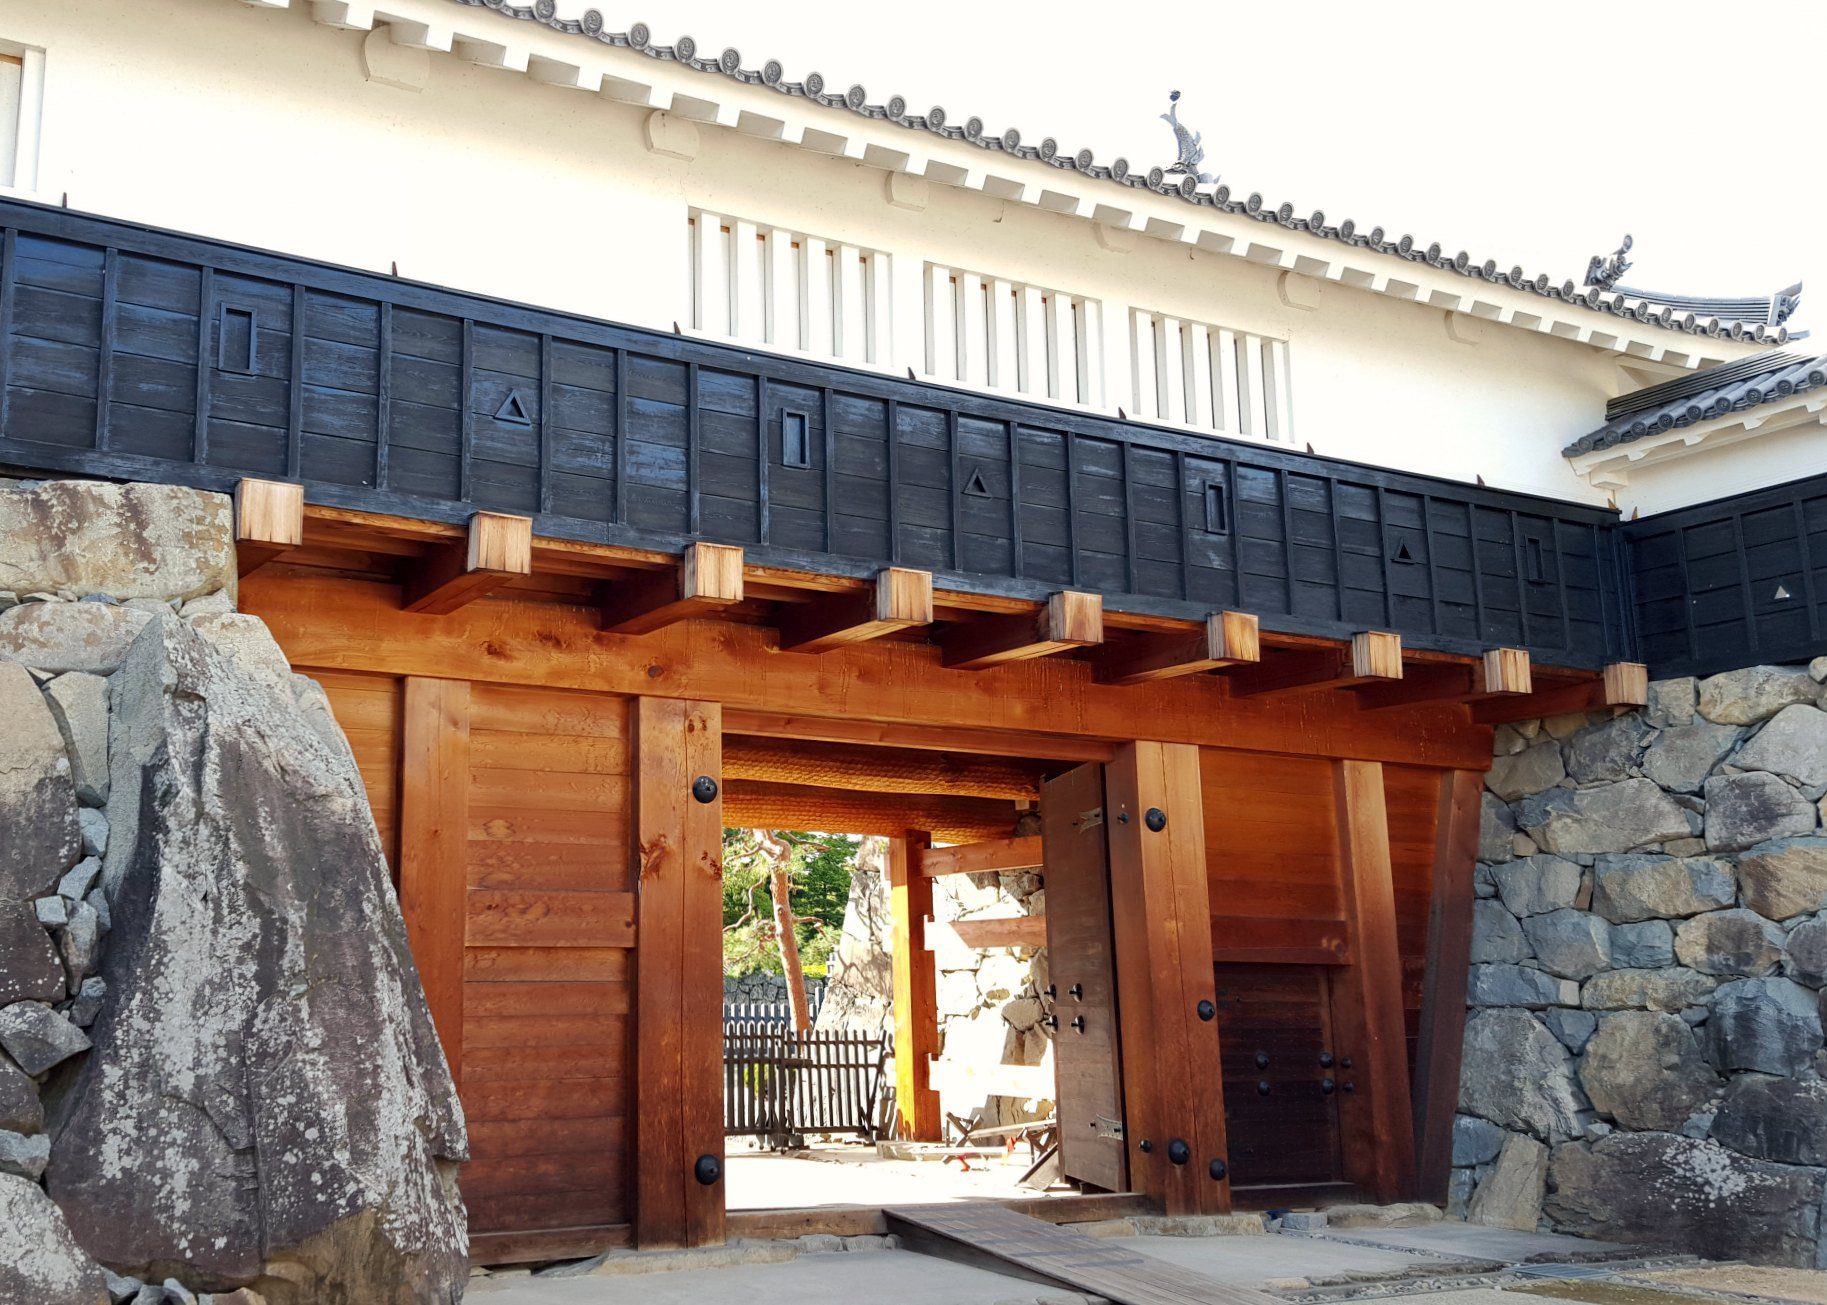 Eastern Taikomon Gate at Matsumoto Castl, Japan